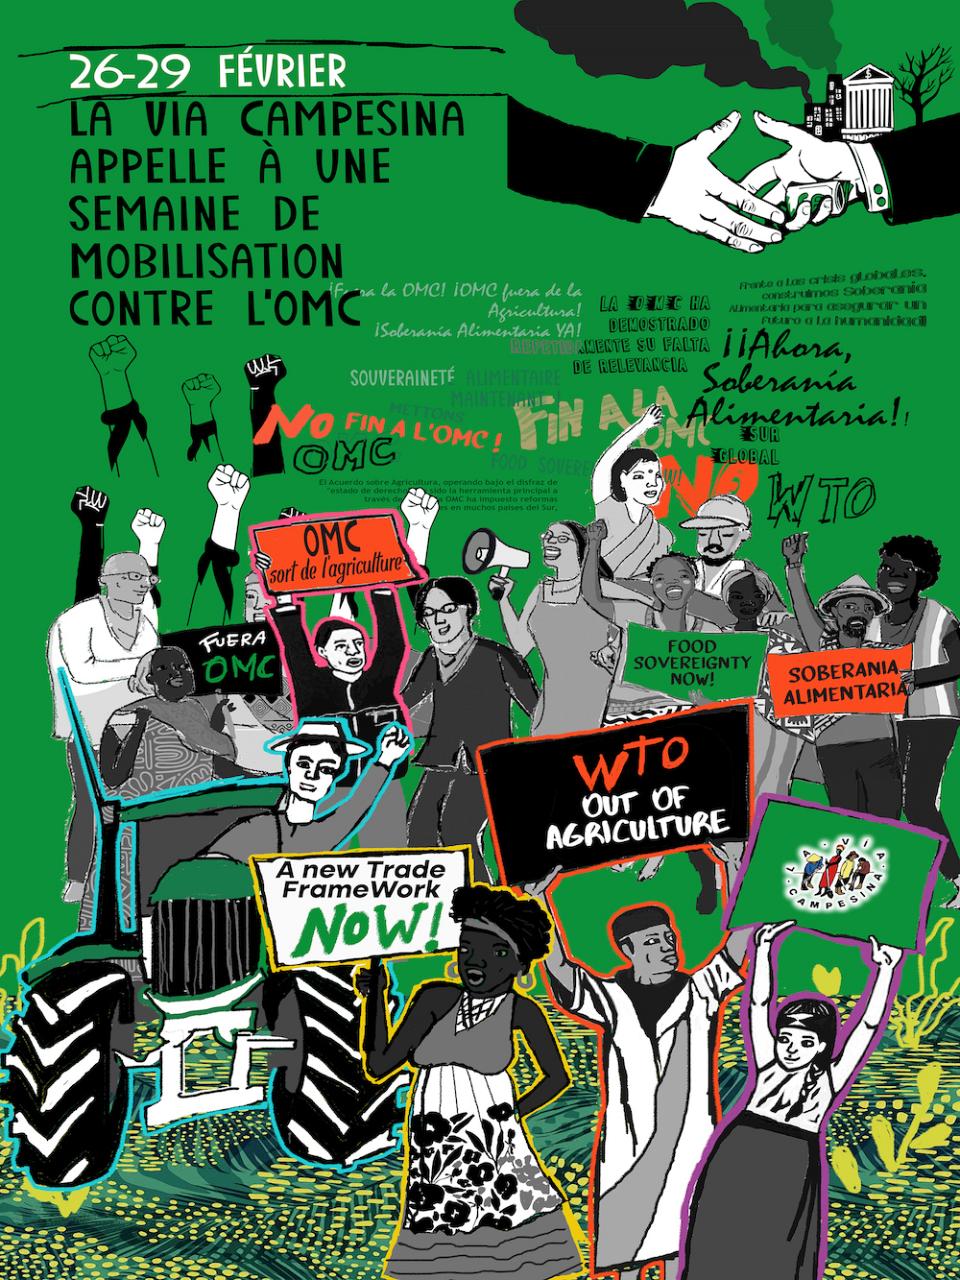 Affiche de mobilisation contre l'OMC